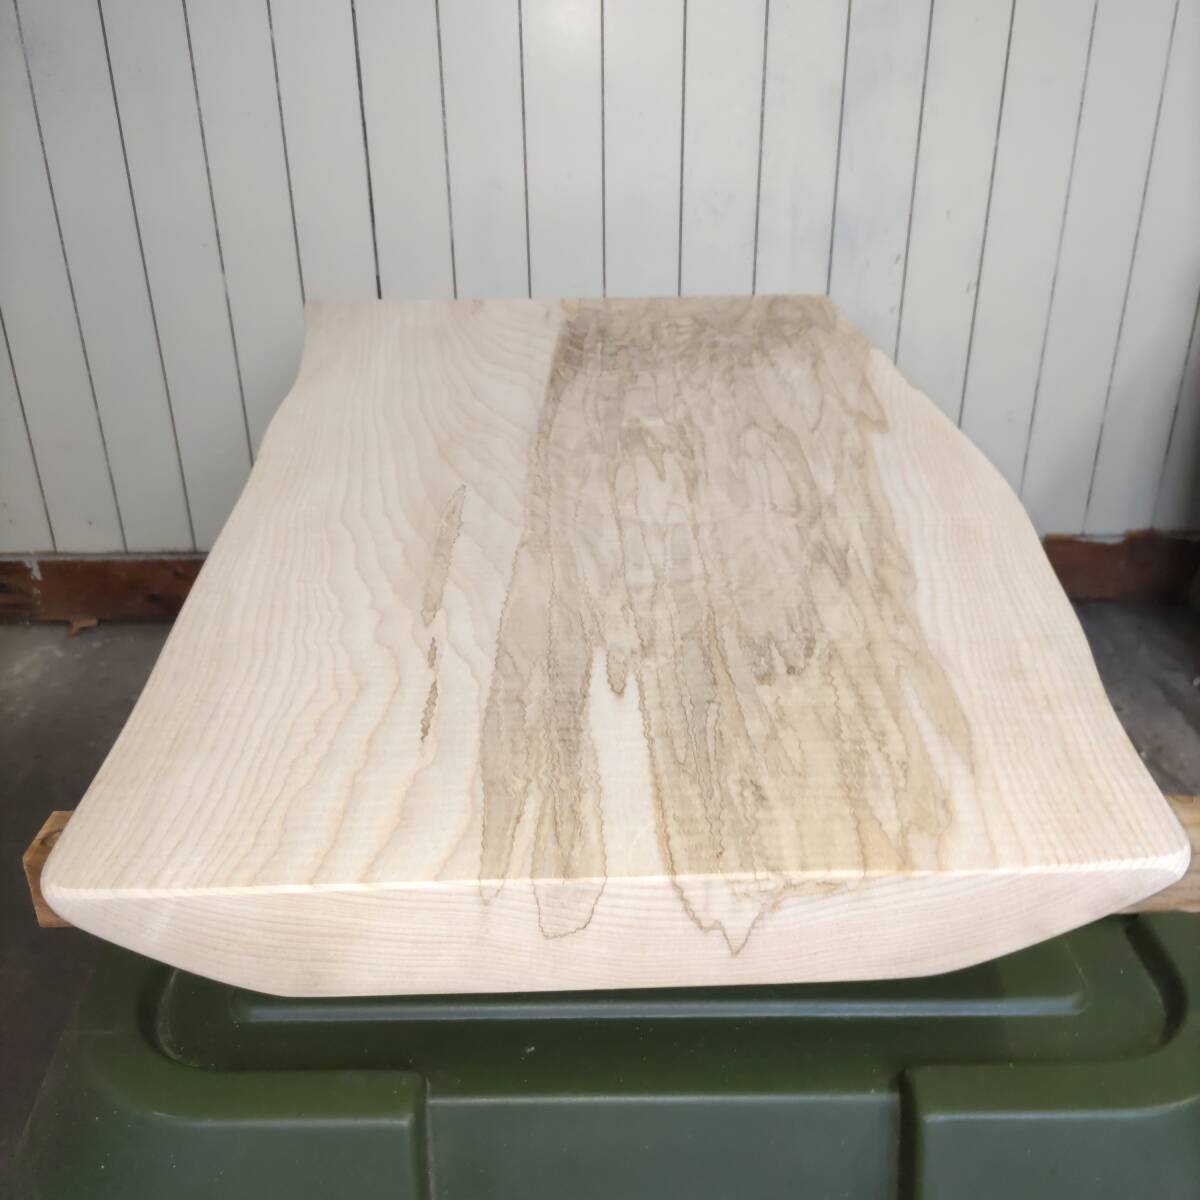 イタヤカエデ 楓 約長900幅380〜500厚45ミリ 製材後約半年 耳付き板 一枚板 天然木 無垢 未乾燥 花台 多肉棚 テーブル板の画像3